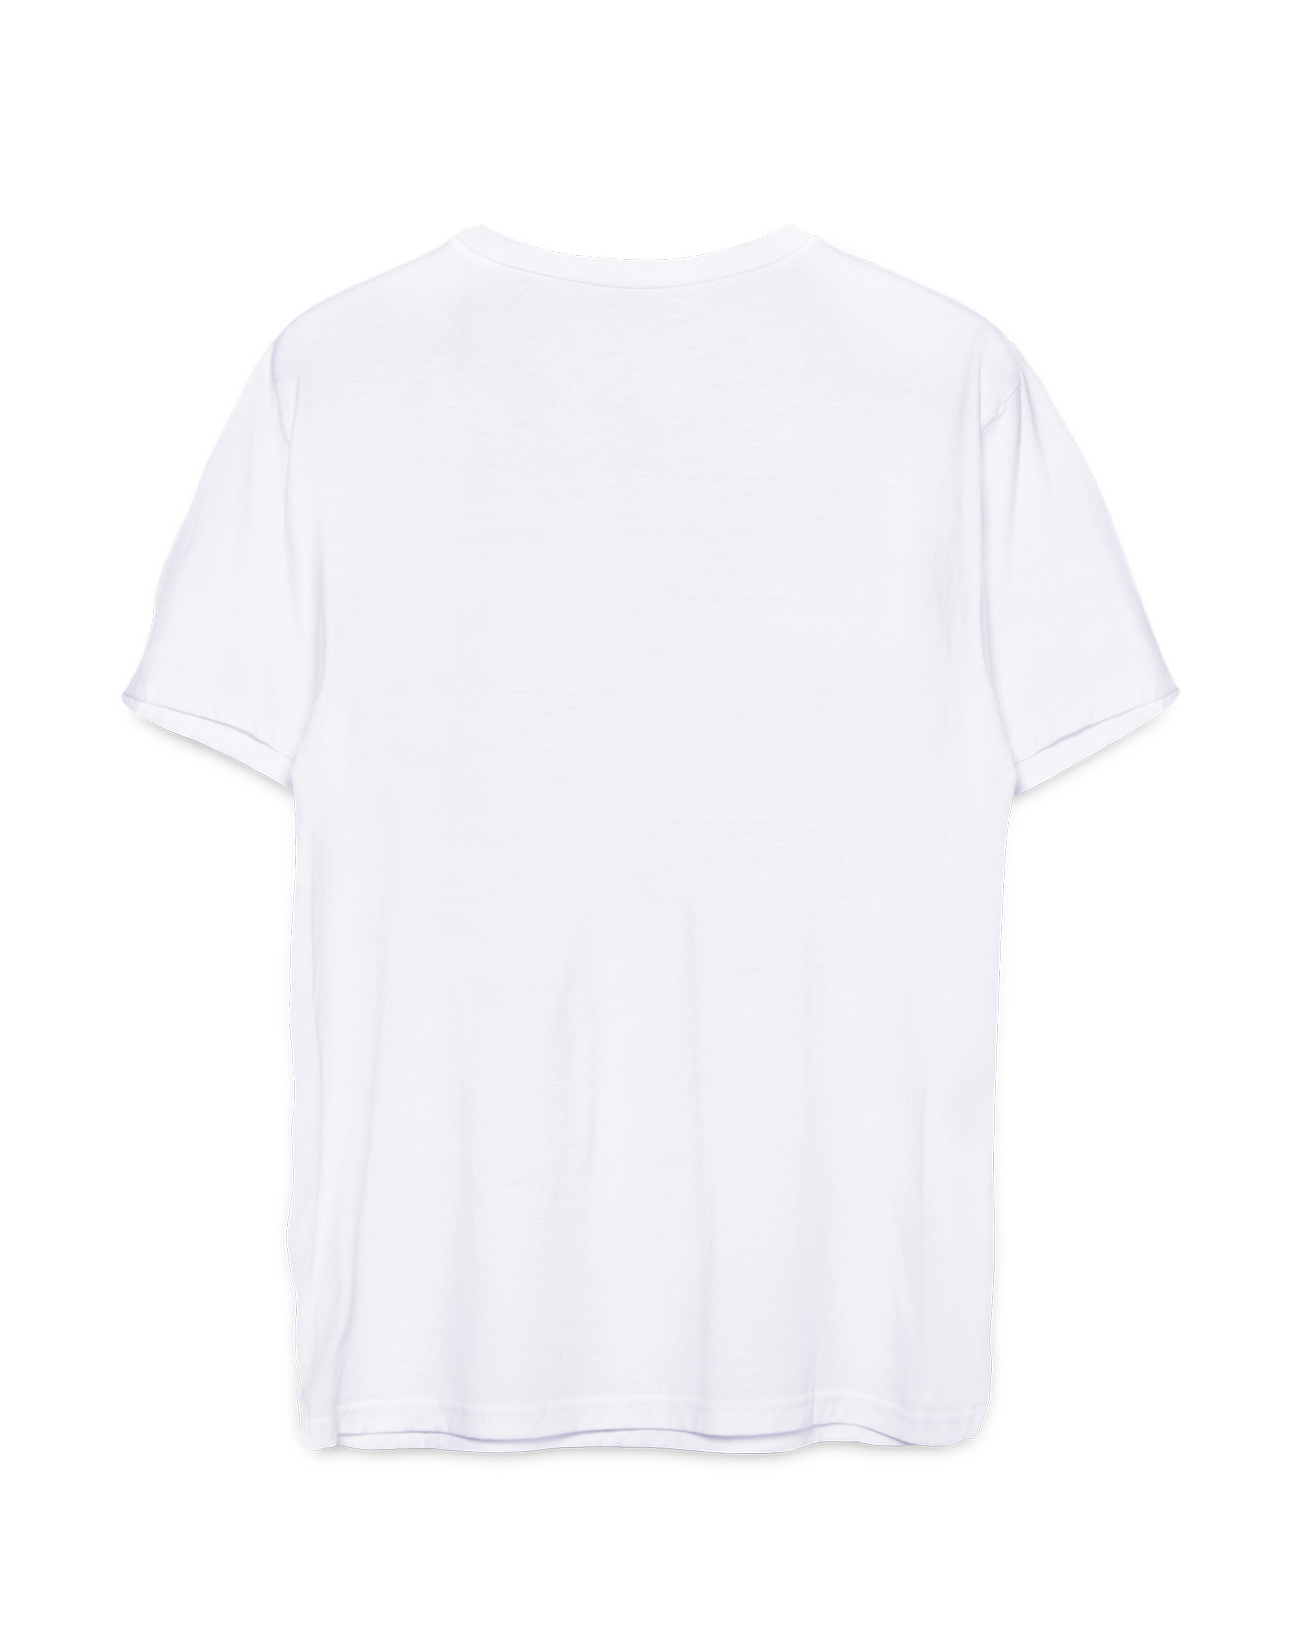 Let's Rock it white unisex t-shirt